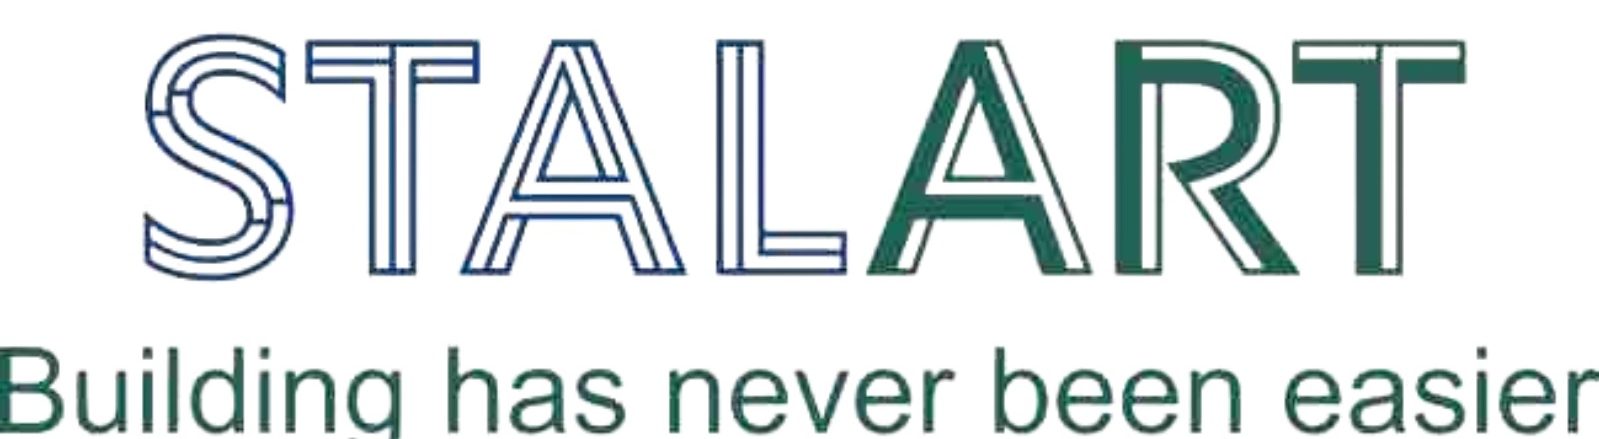 Stalart logo